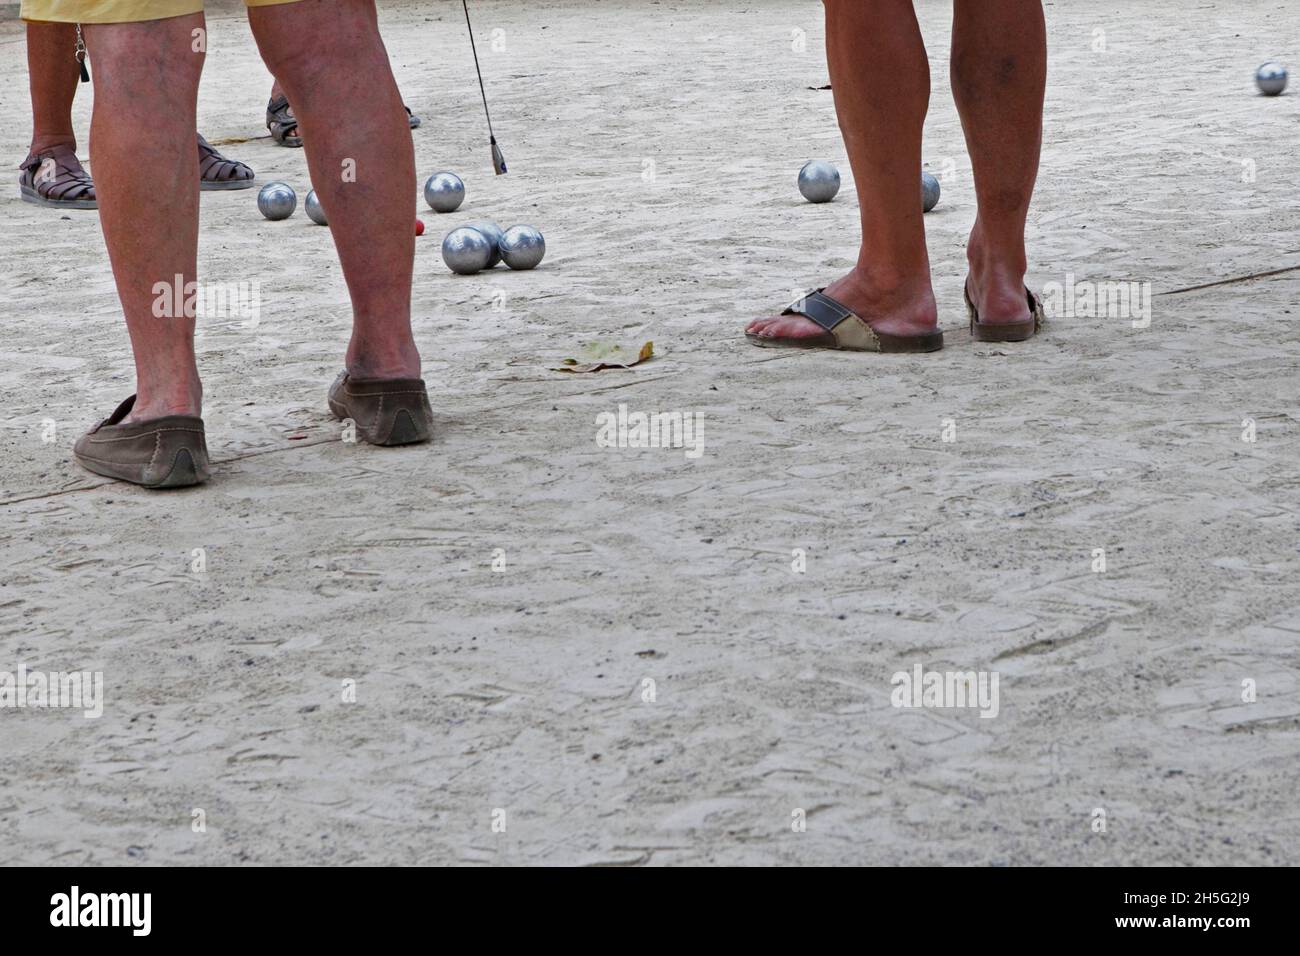 Franzosen, die gerade -auf einem öffentlichen Platz- Boule spielen. Keine Erkennbarkeit, da nur Beine. Cannes, Frankreich. Foto de stock